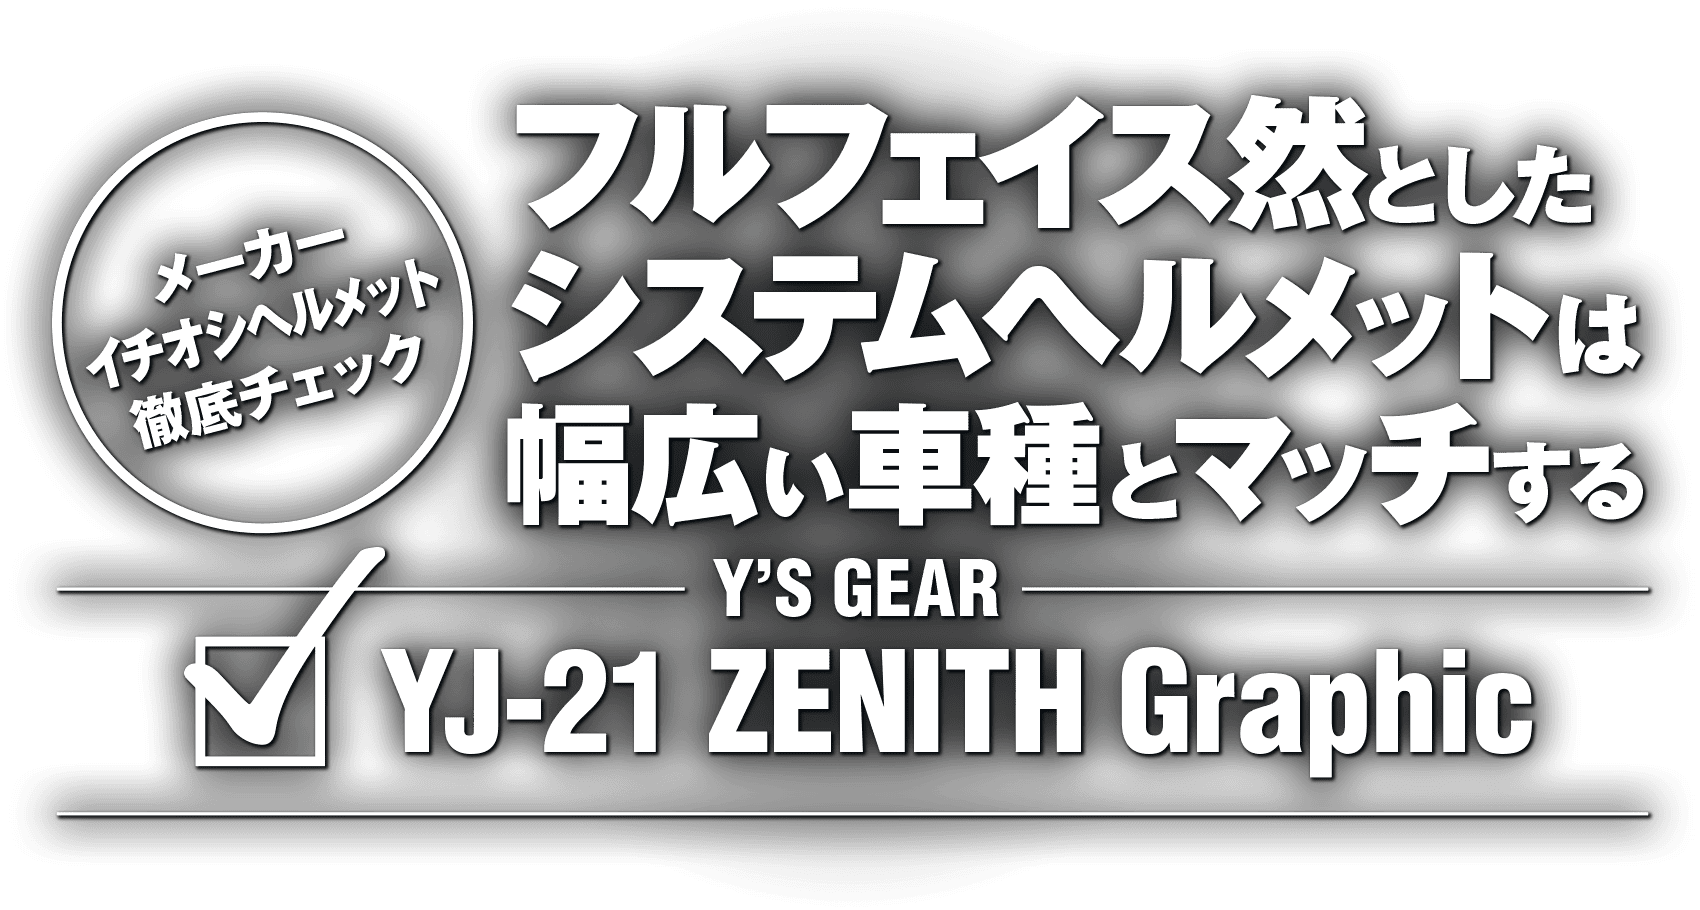 フルフェイス然としたシステムヘルメットは幅広い車種とマッチする “Y'S GEAR YJ-21 ZENITH Graphic”